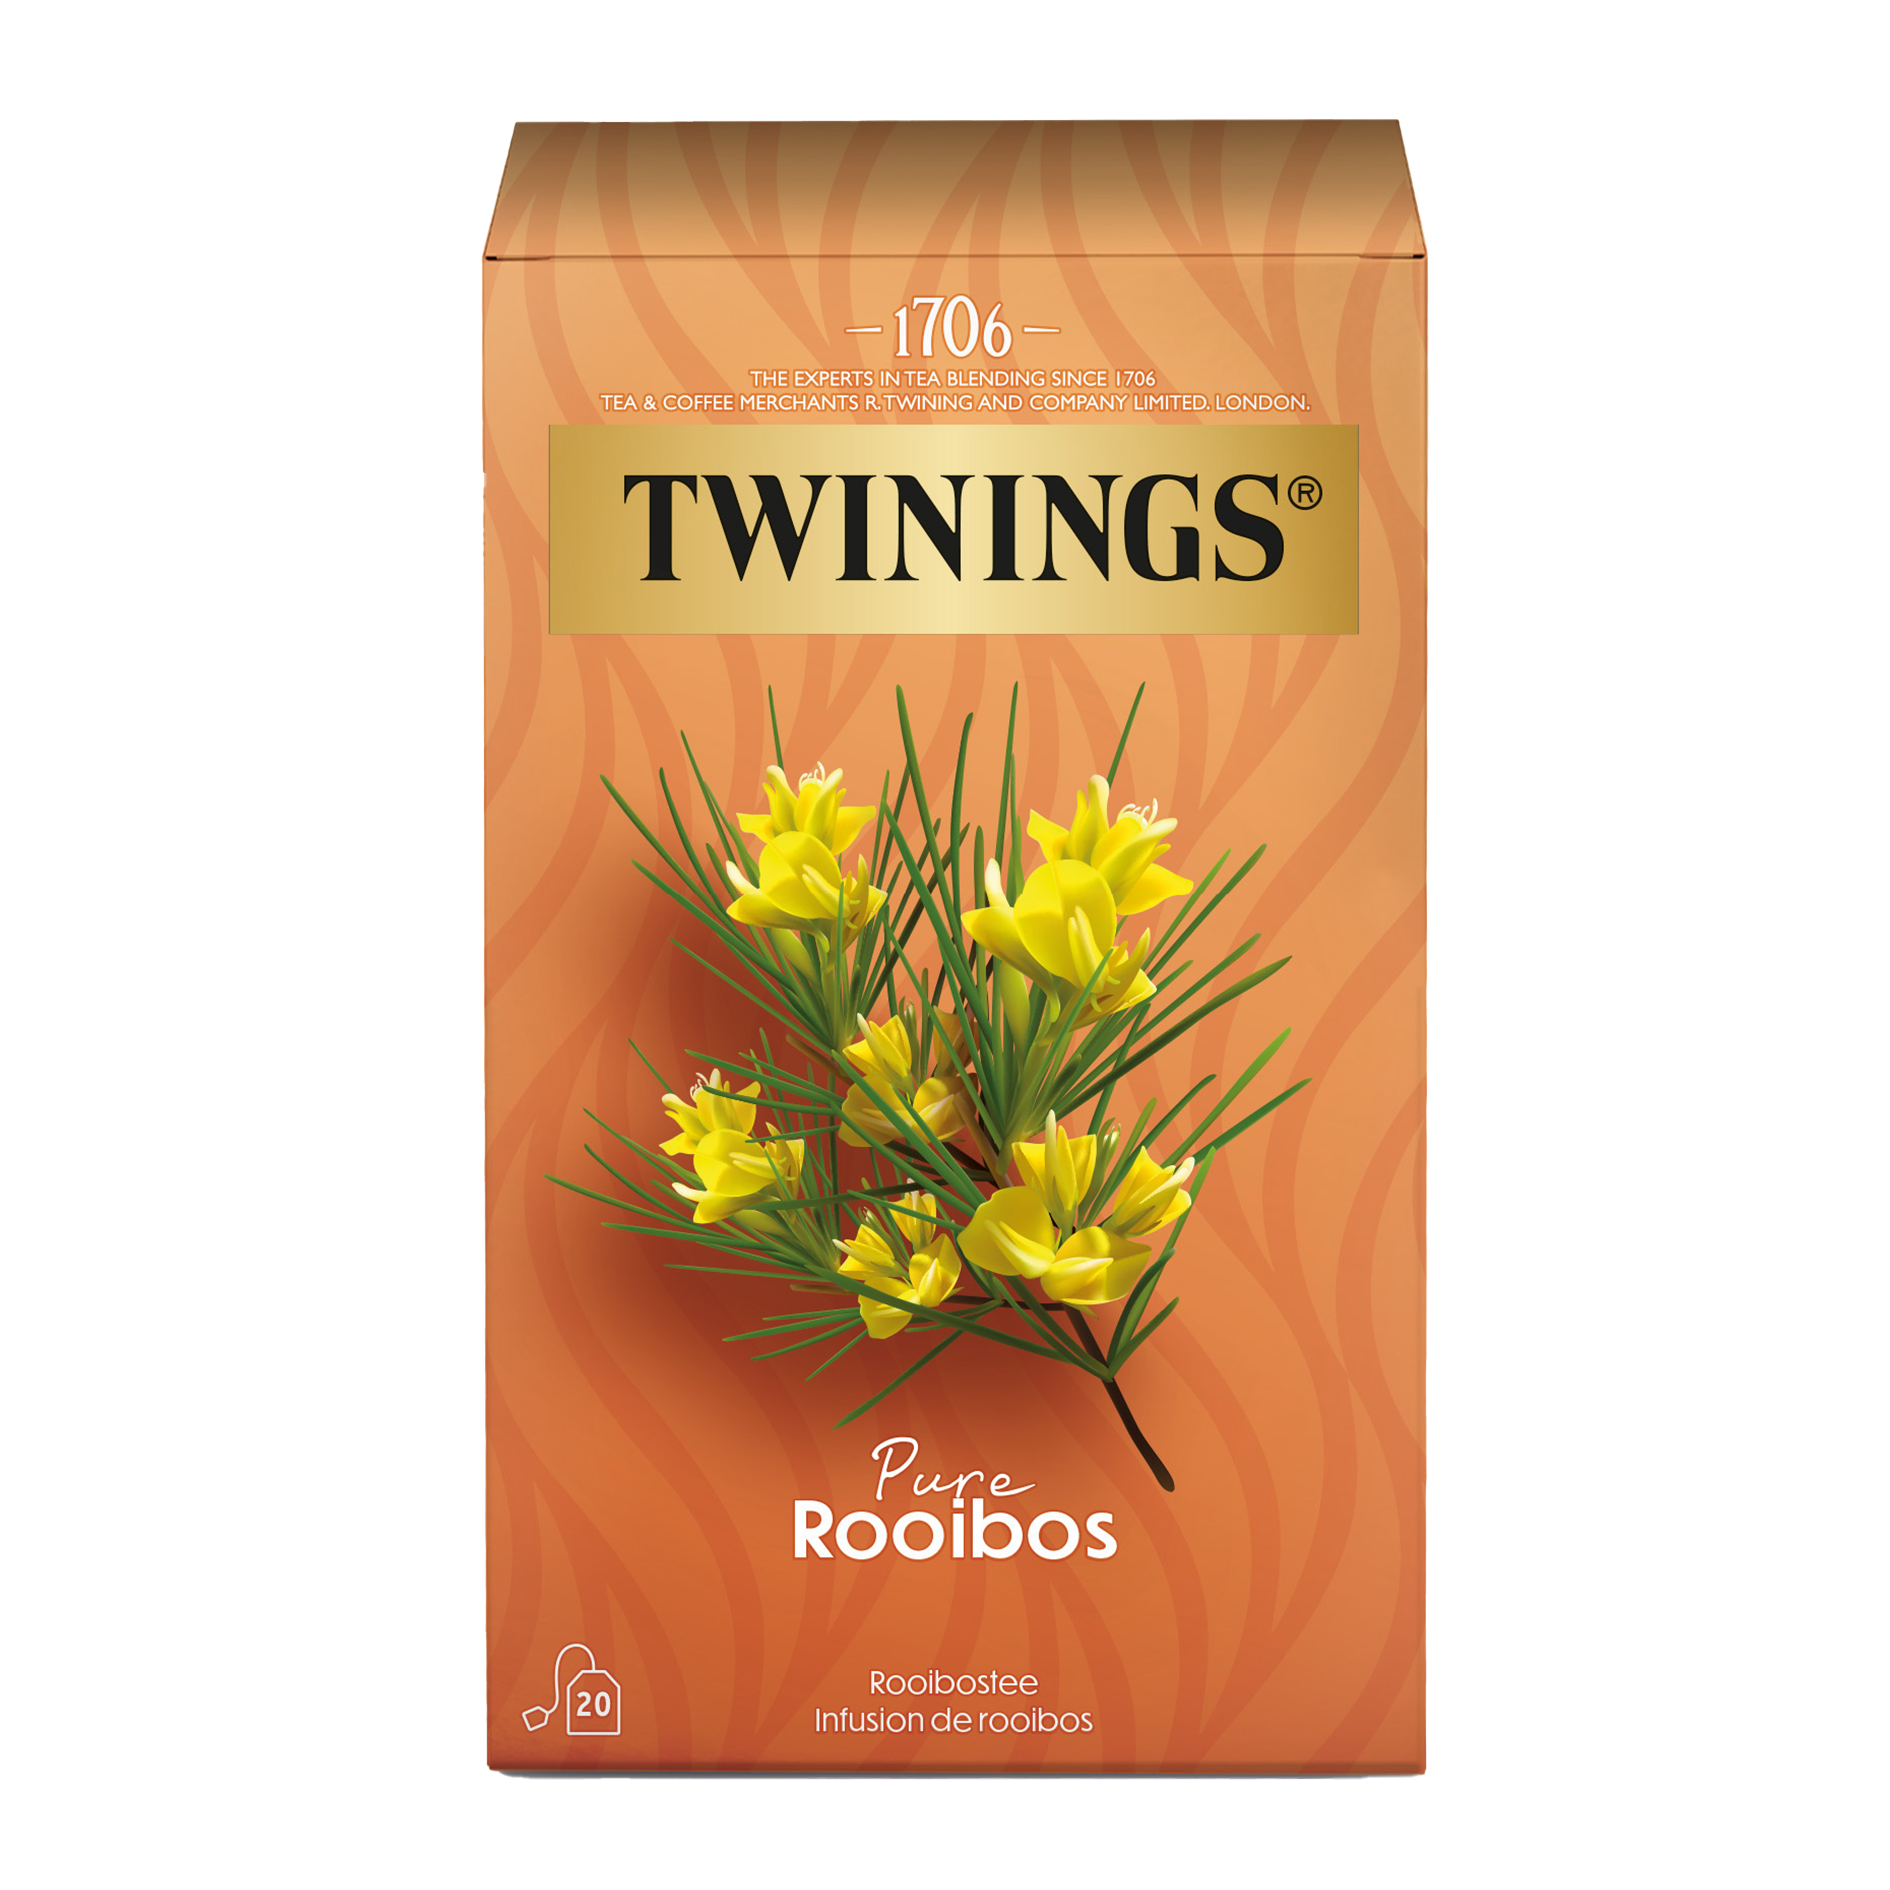  Pure Rooibos Twinings - Tisane